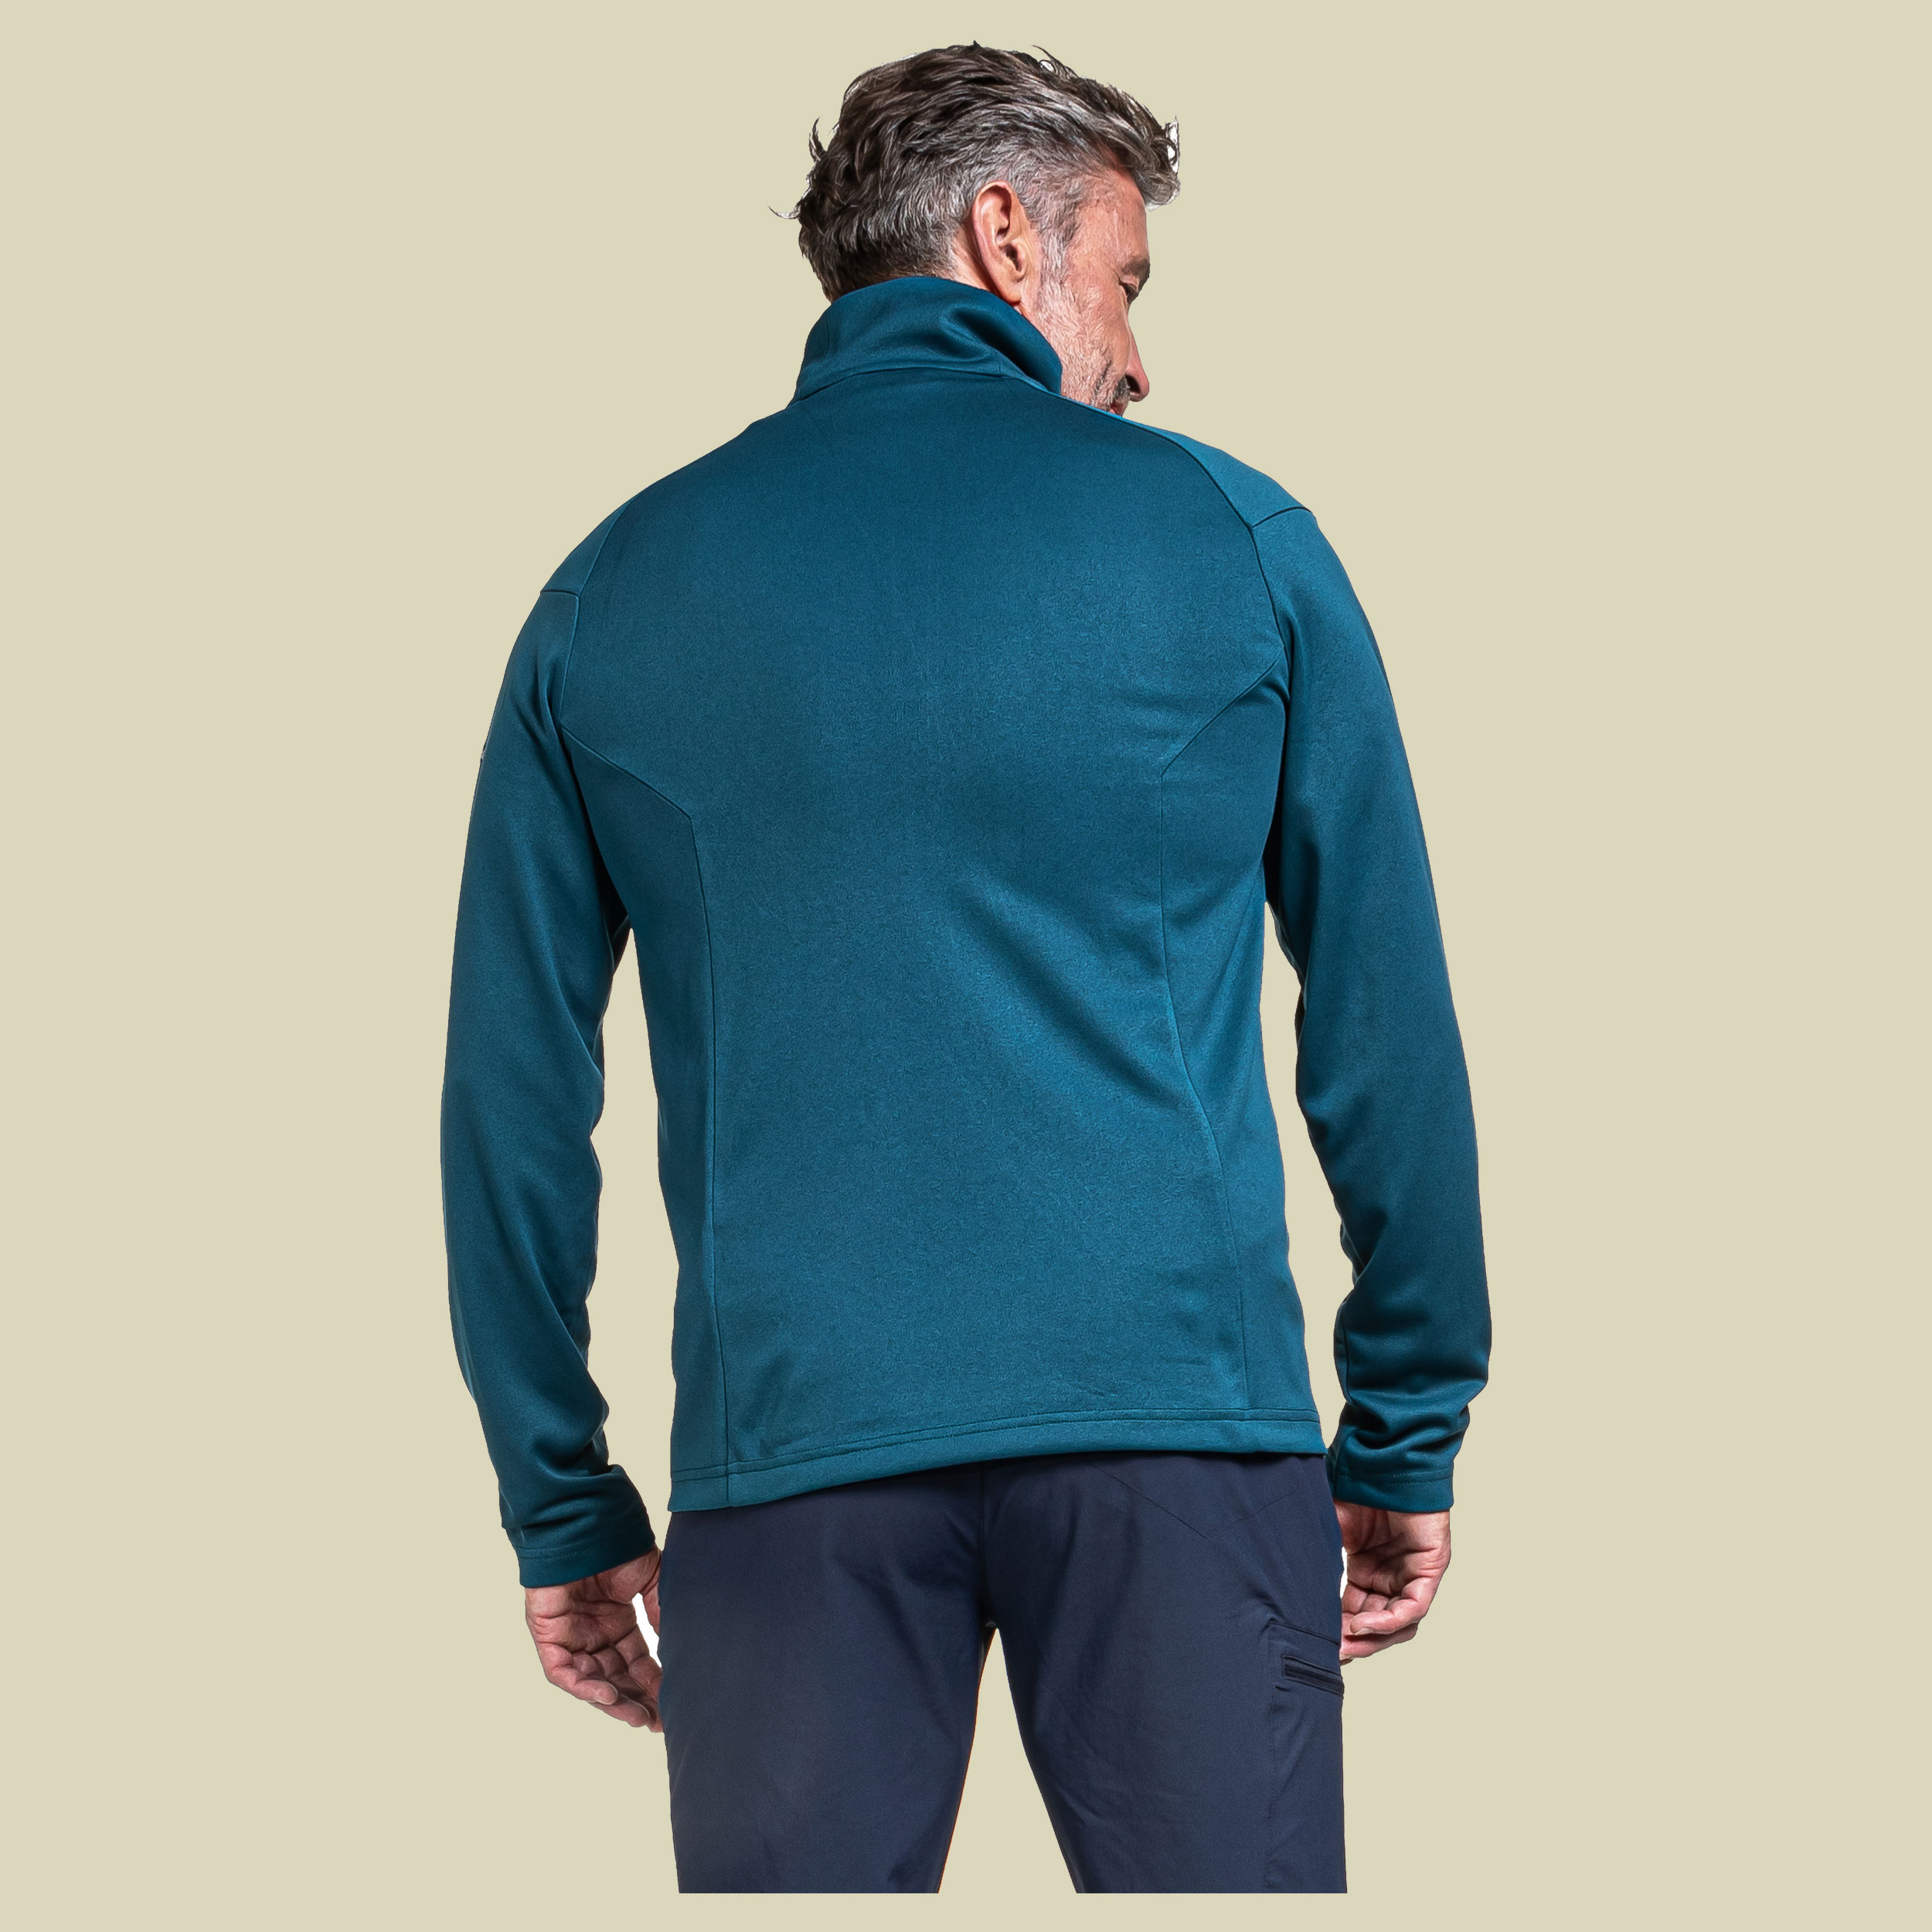 Fleece Jacket Torup Men Größe 56 Farbe lakemount blue